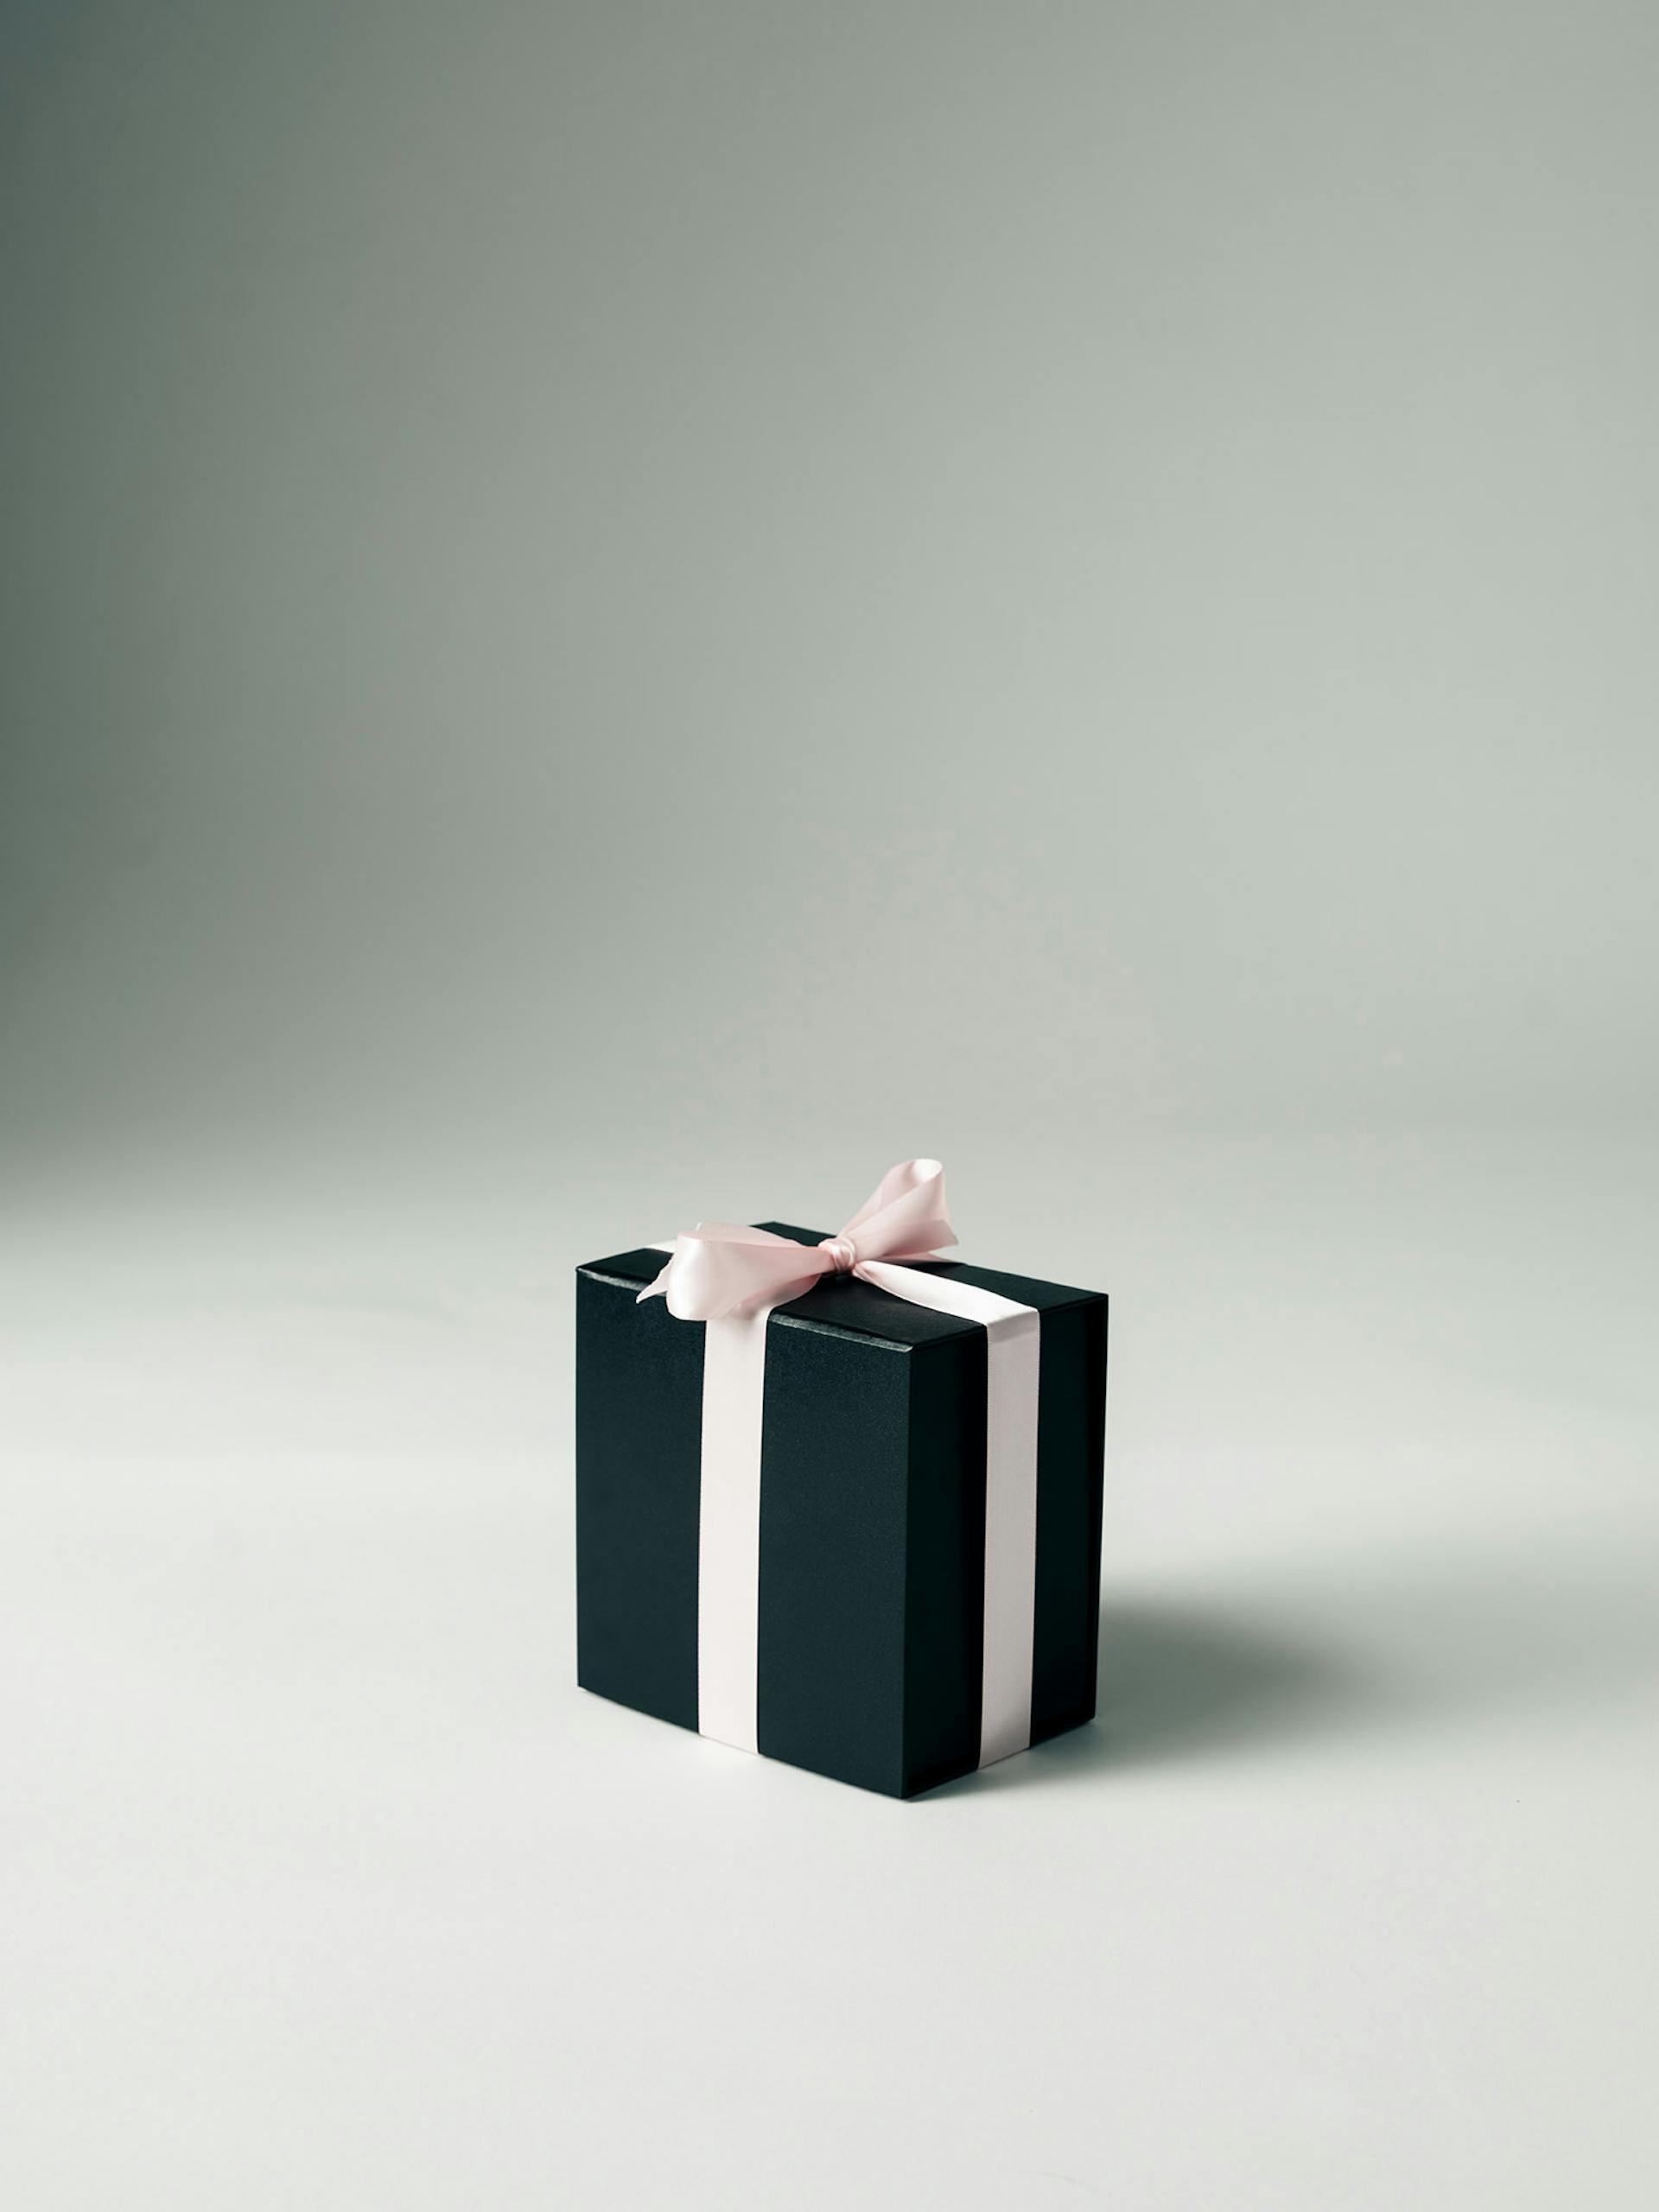 Schwarze Geschenkbox mit rosa Schleife auf weißem Hintergrund